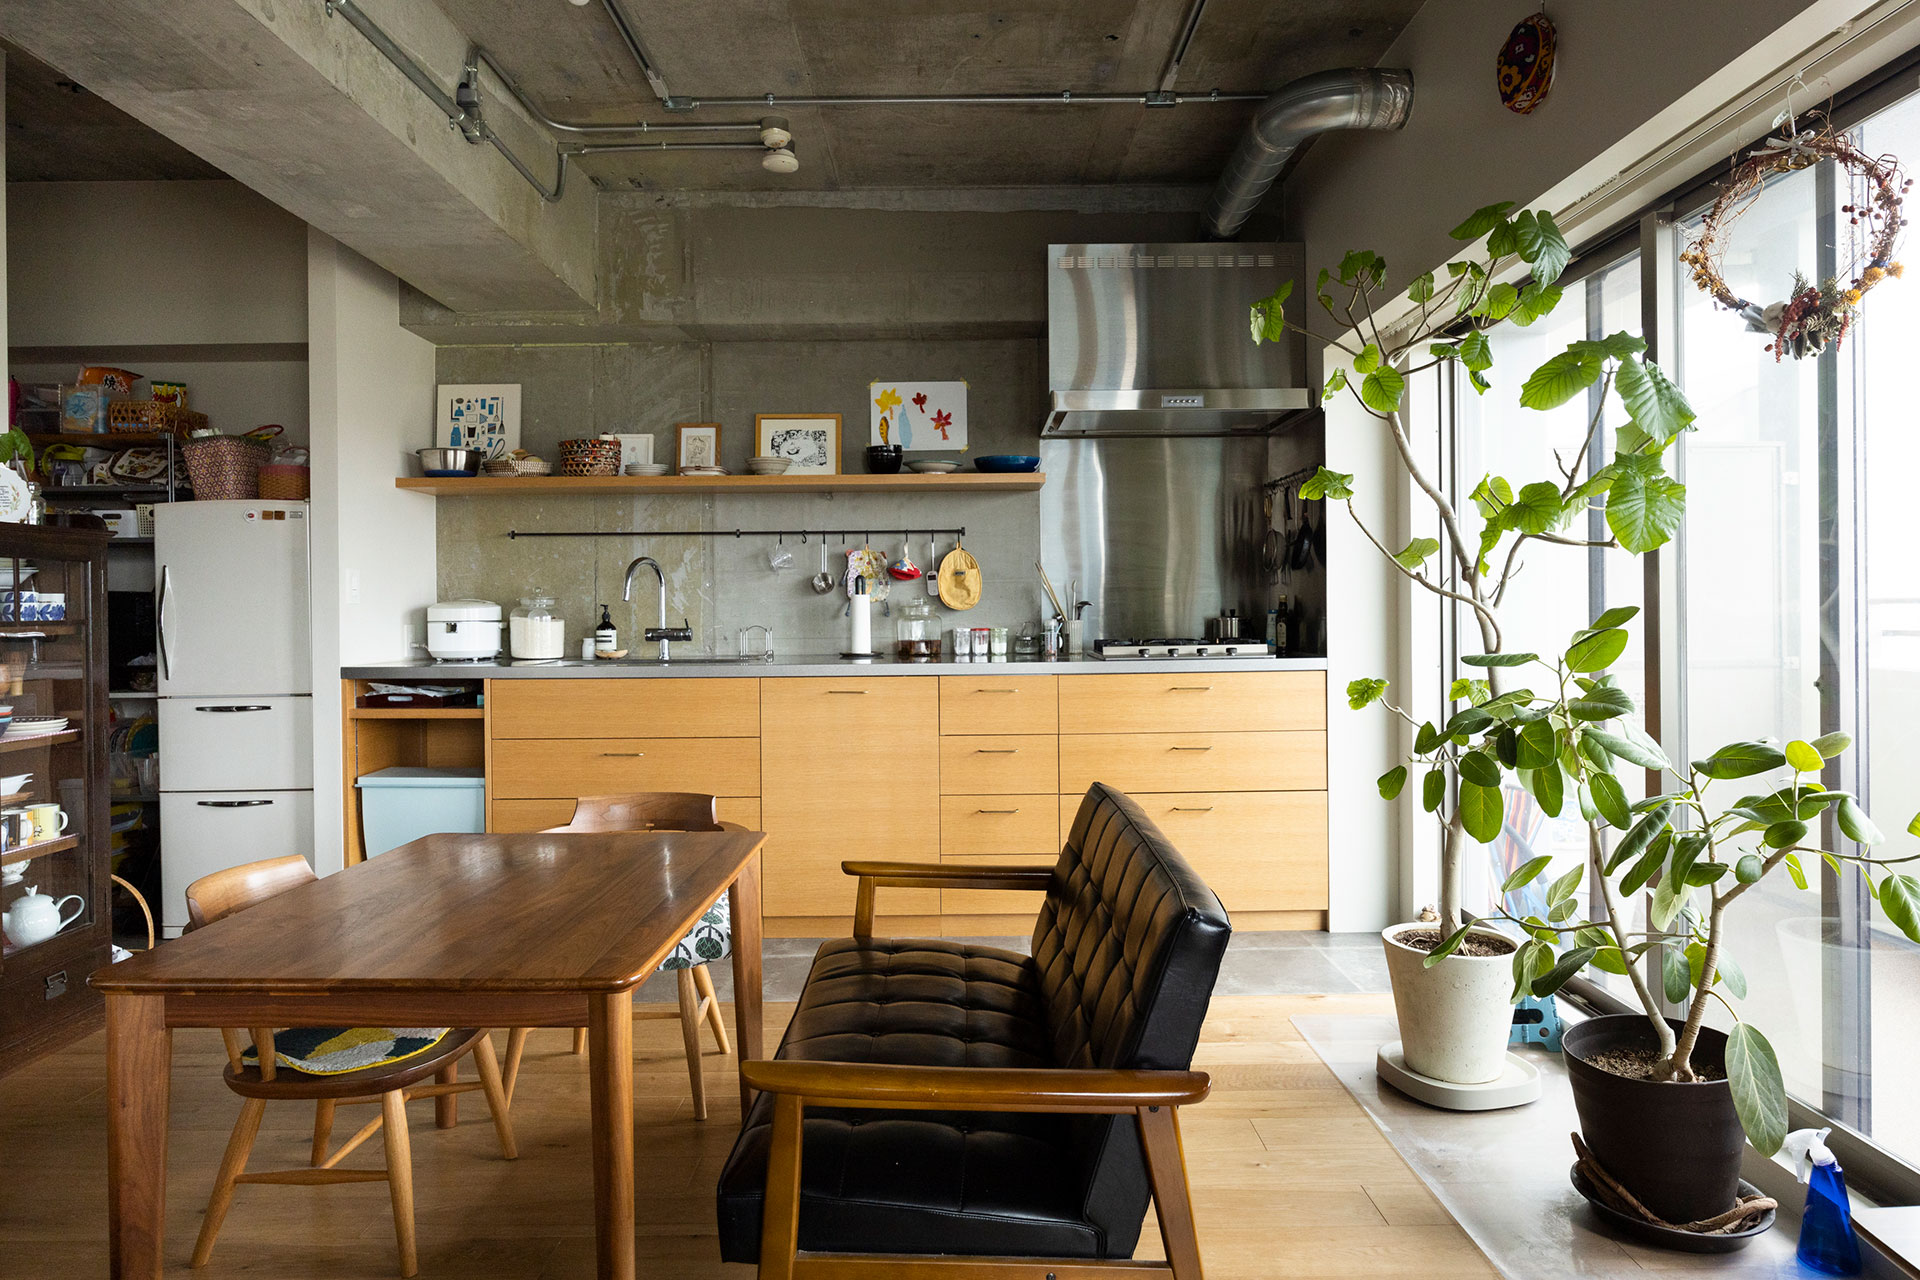 キッチンは、IKEAの既製品に天板と面材をアレンジ。水廻りの床はPタイルで切り替えている。チェアはカリモク。